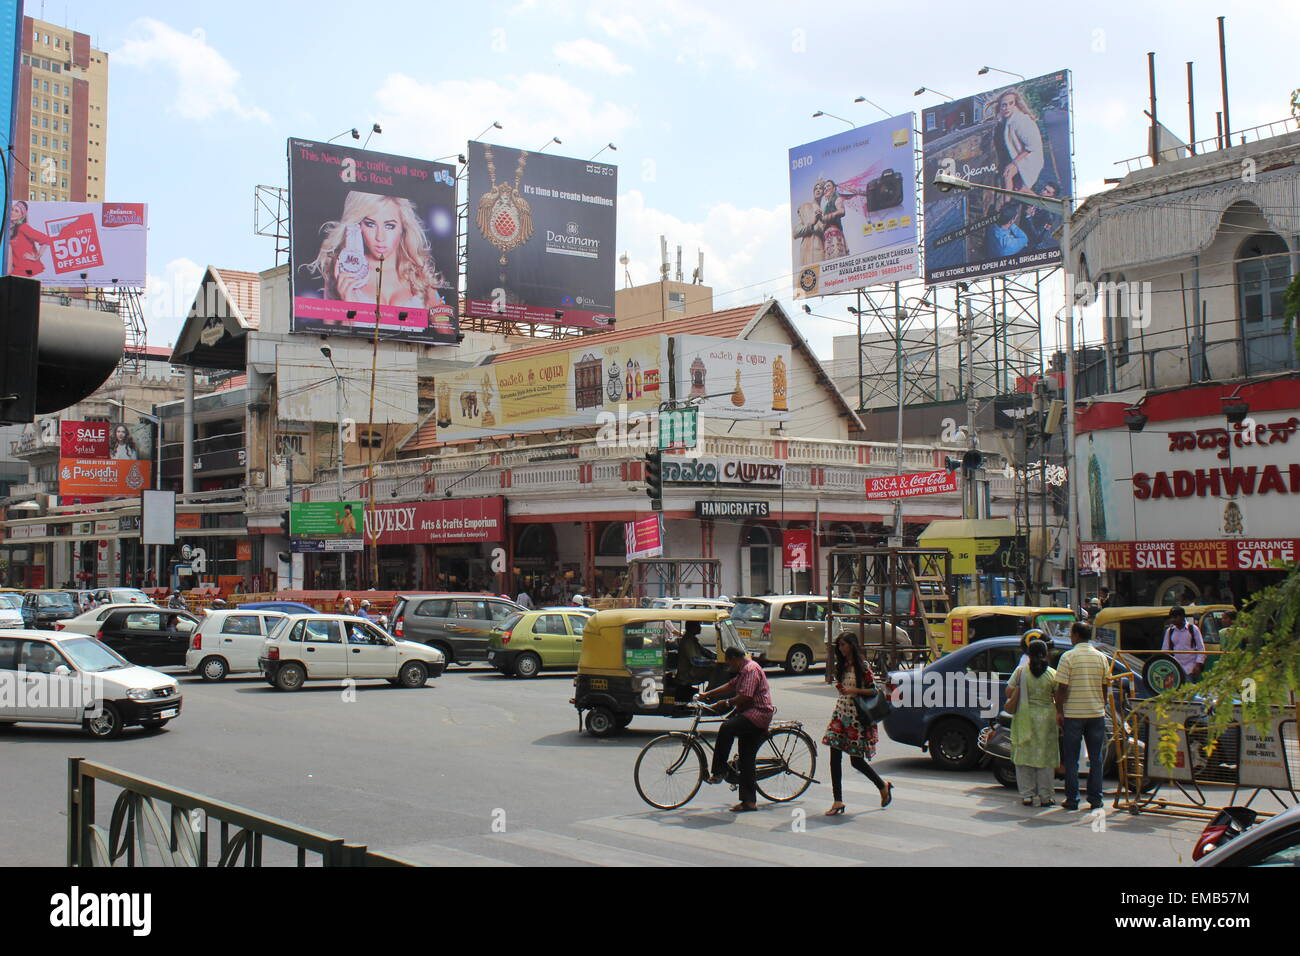 La ville de Bangalore, anciennement connu sous le nom de Bangalore, dans le sud de l'Inde centrale. Une jonction occupé sur MG Road Banque D'Images